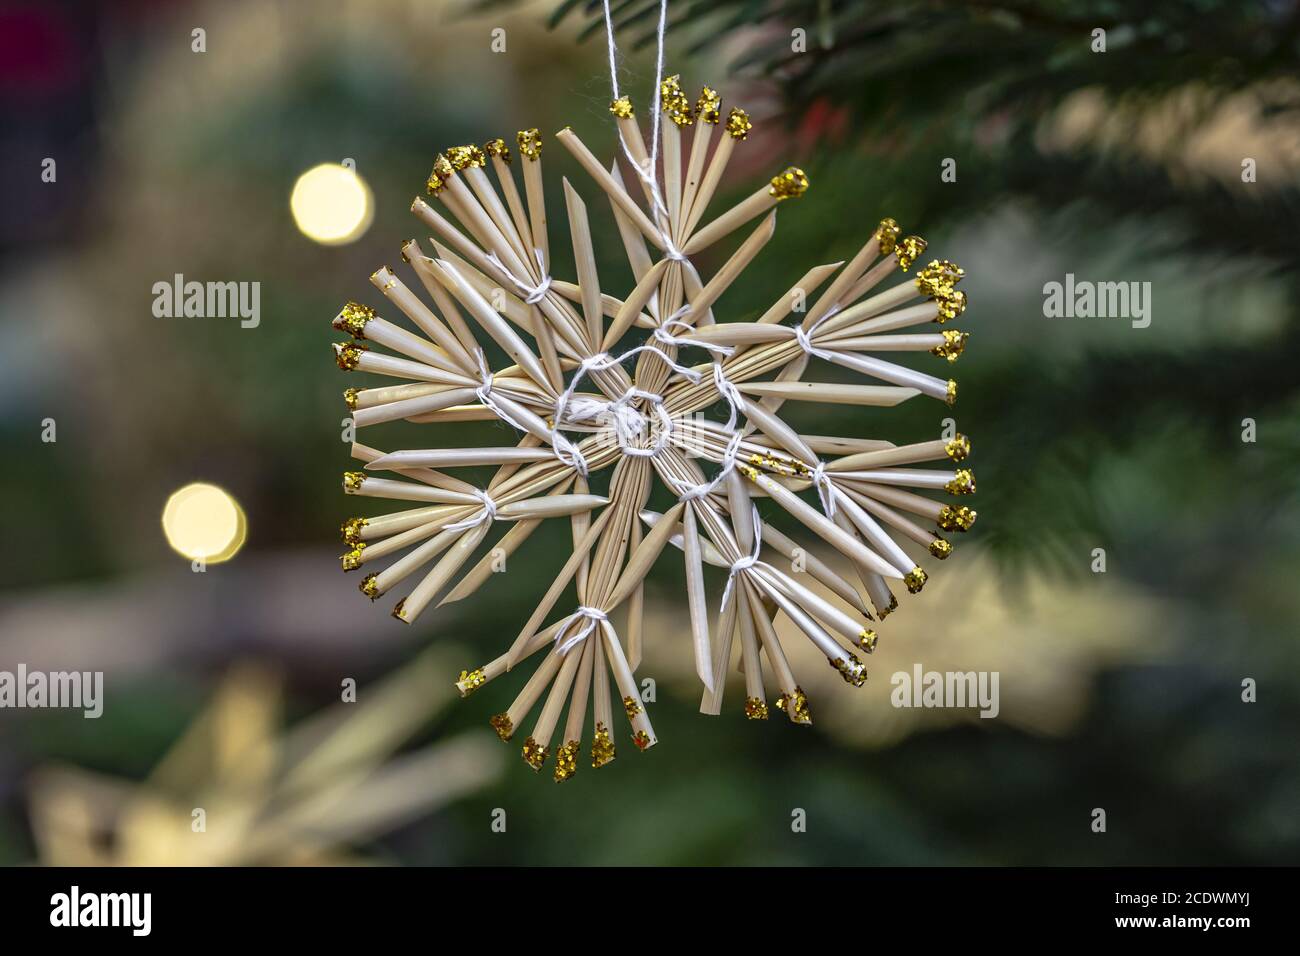 Nostalgic Christmas tree decorations Stock Photo